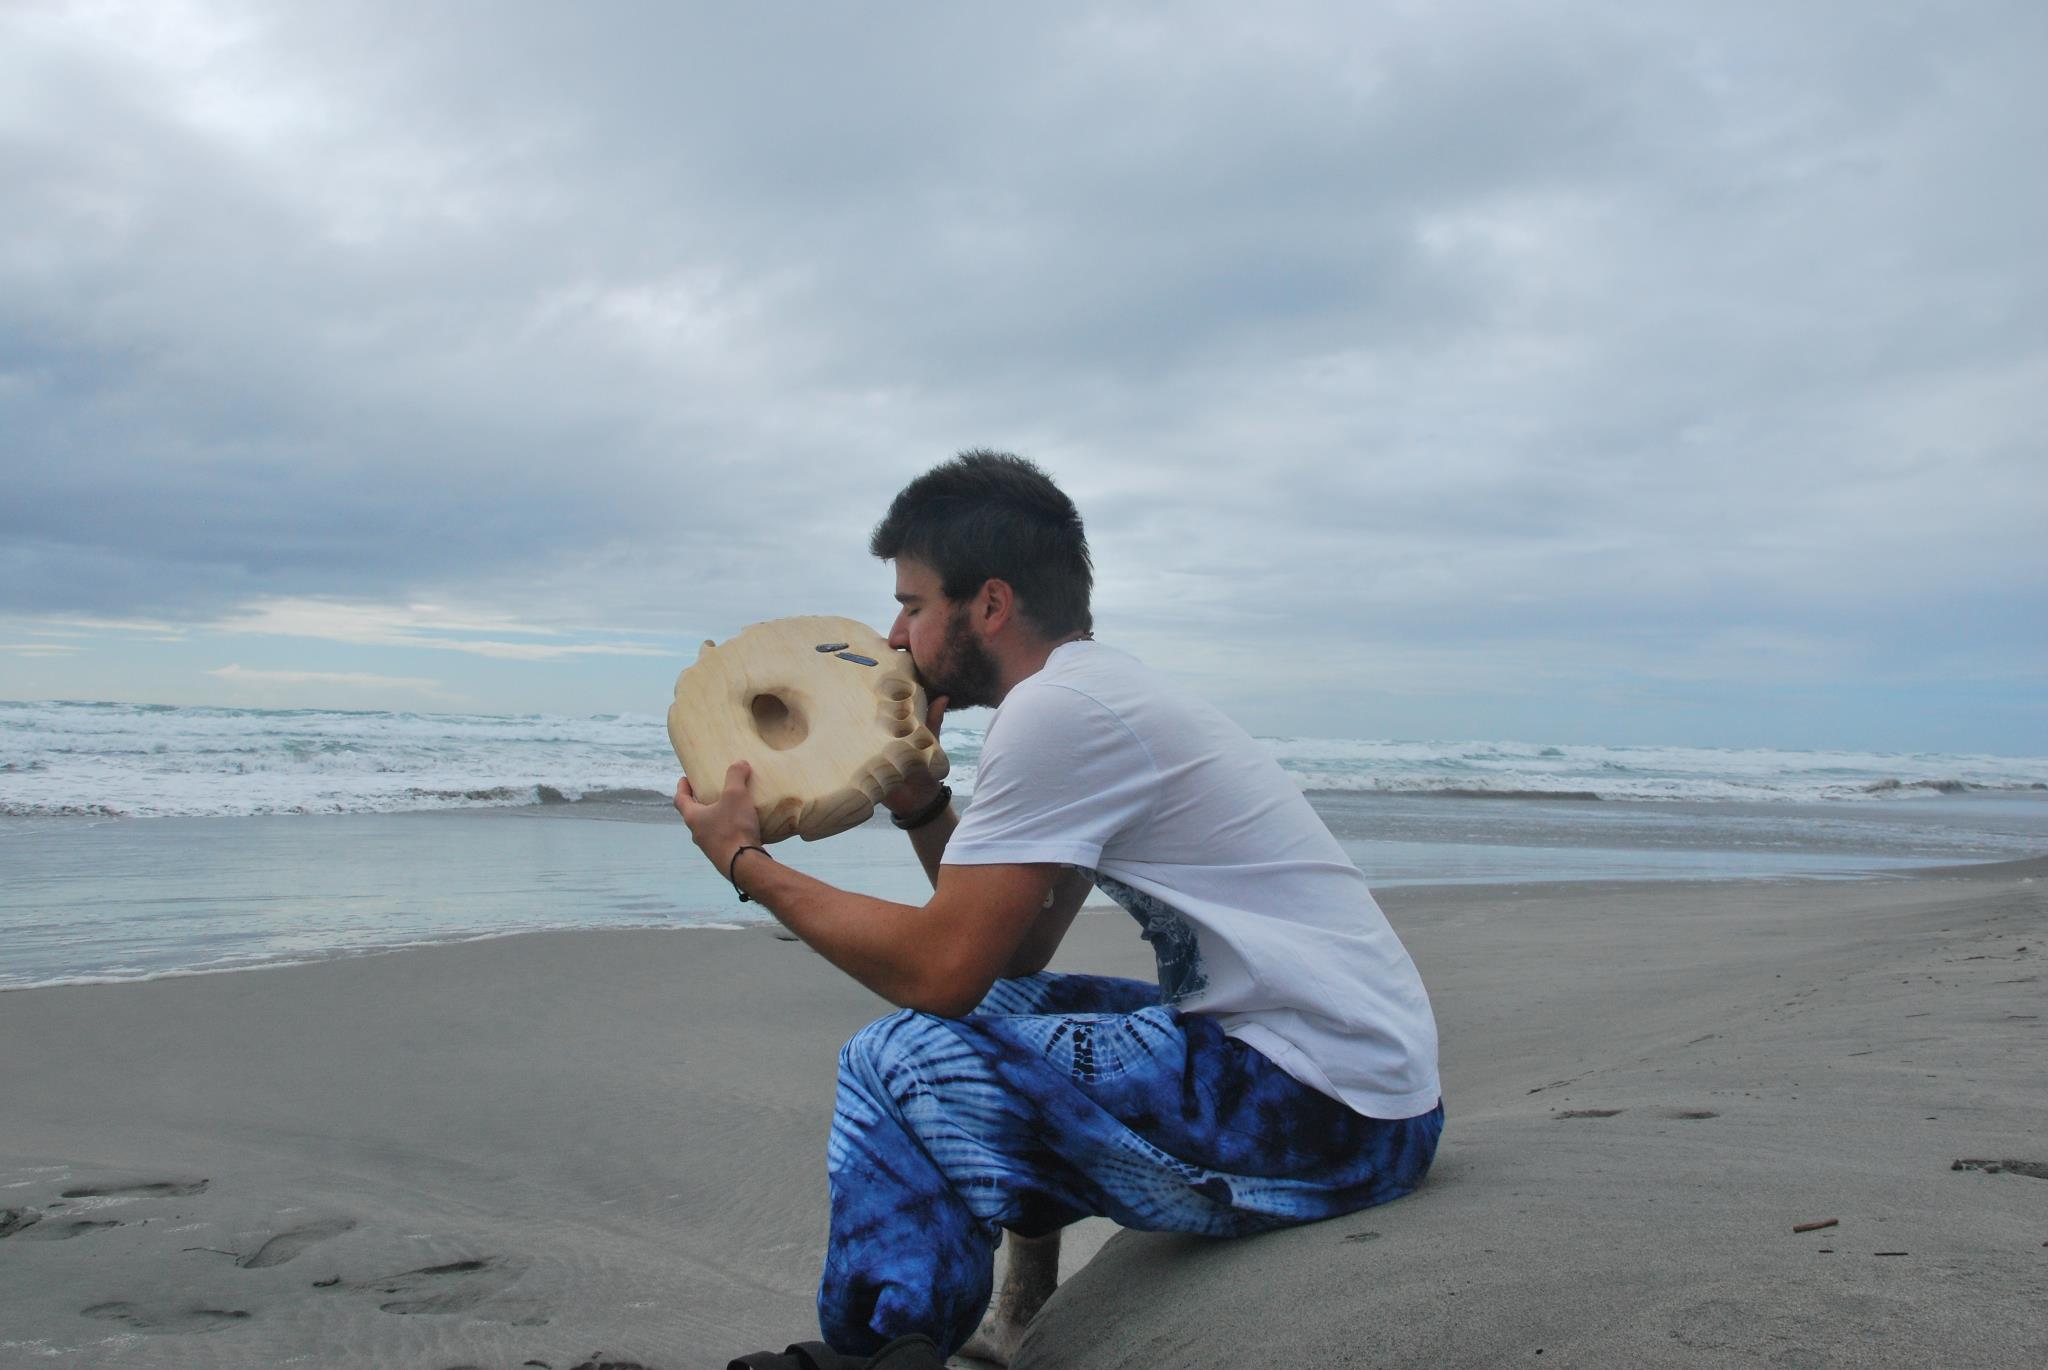 Photo de Julien Doutaz, fabricant des ujazi didgeridoos, sur une plage en Nouvelle Zélande avec un didgeridoo sculpté